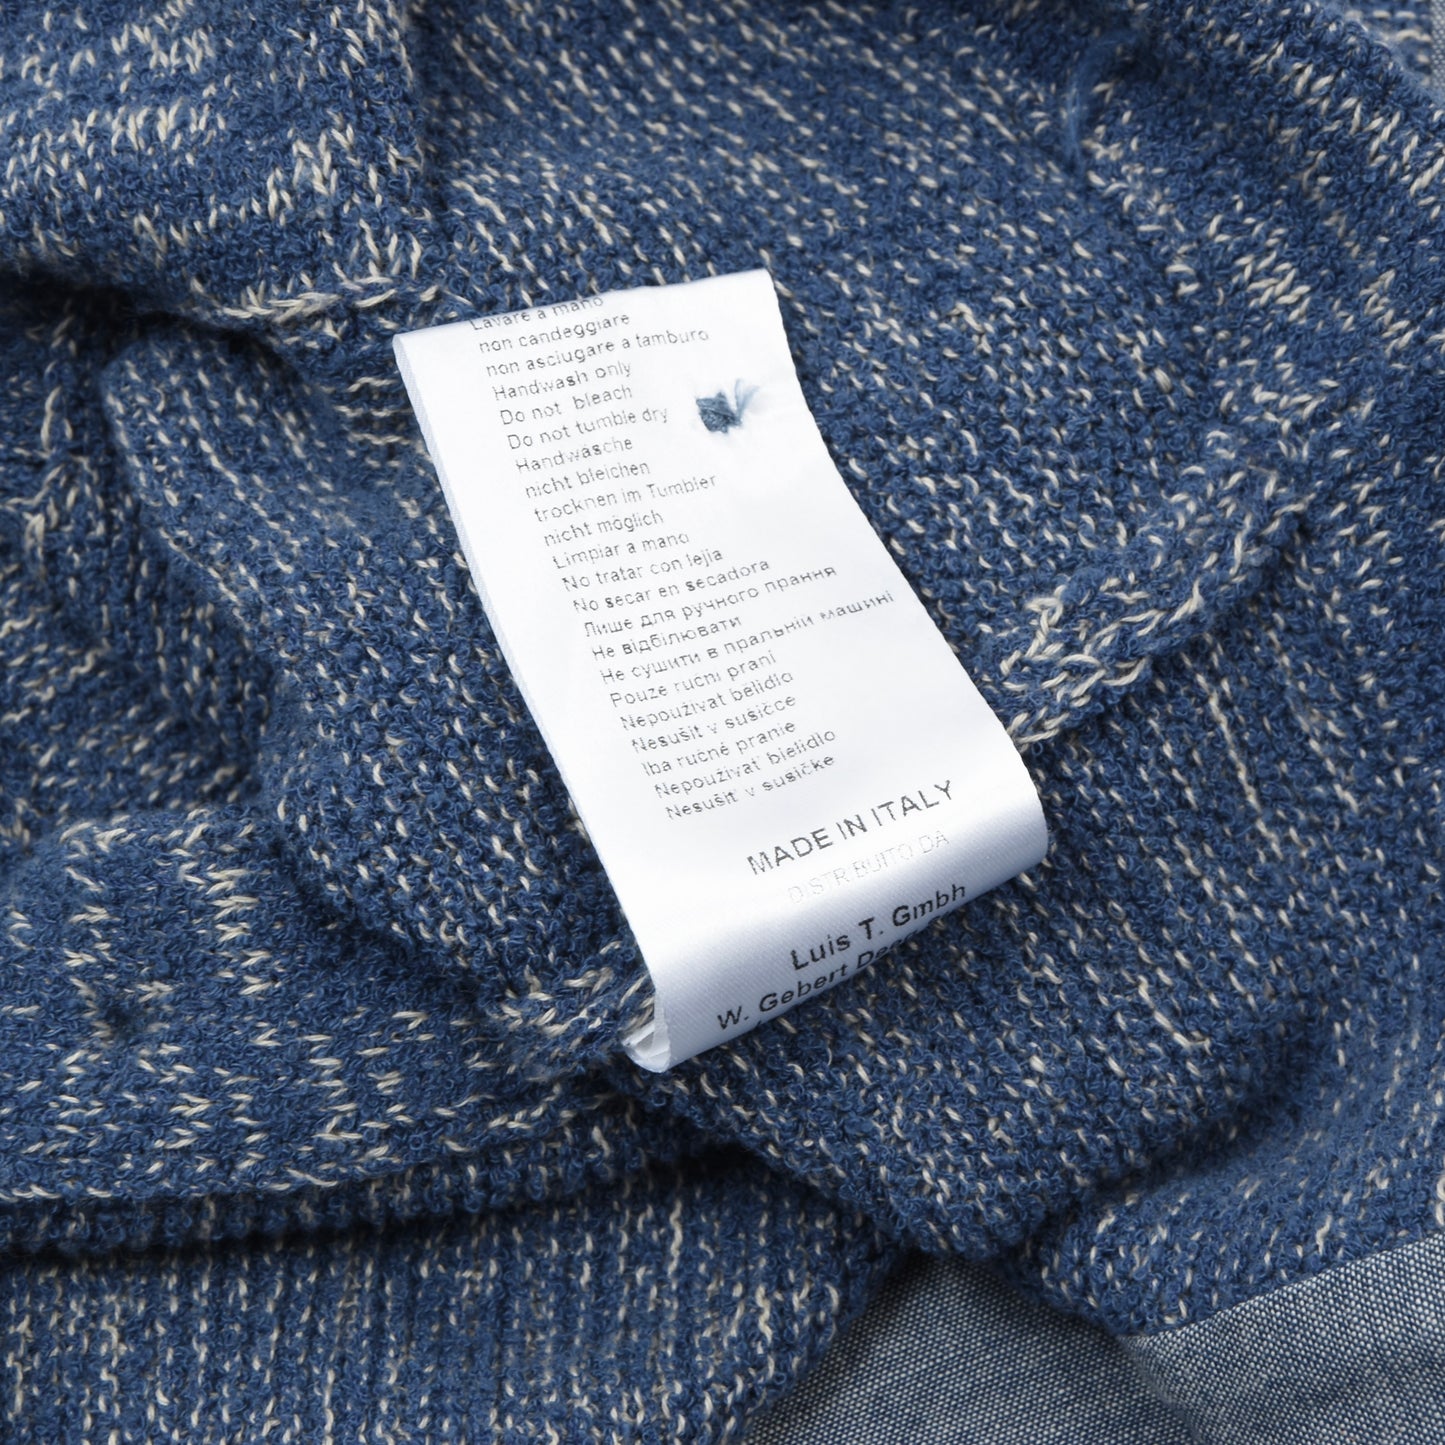 Luis Trenker Cotton-Blend Waistcoat/Vest Size S - Blue